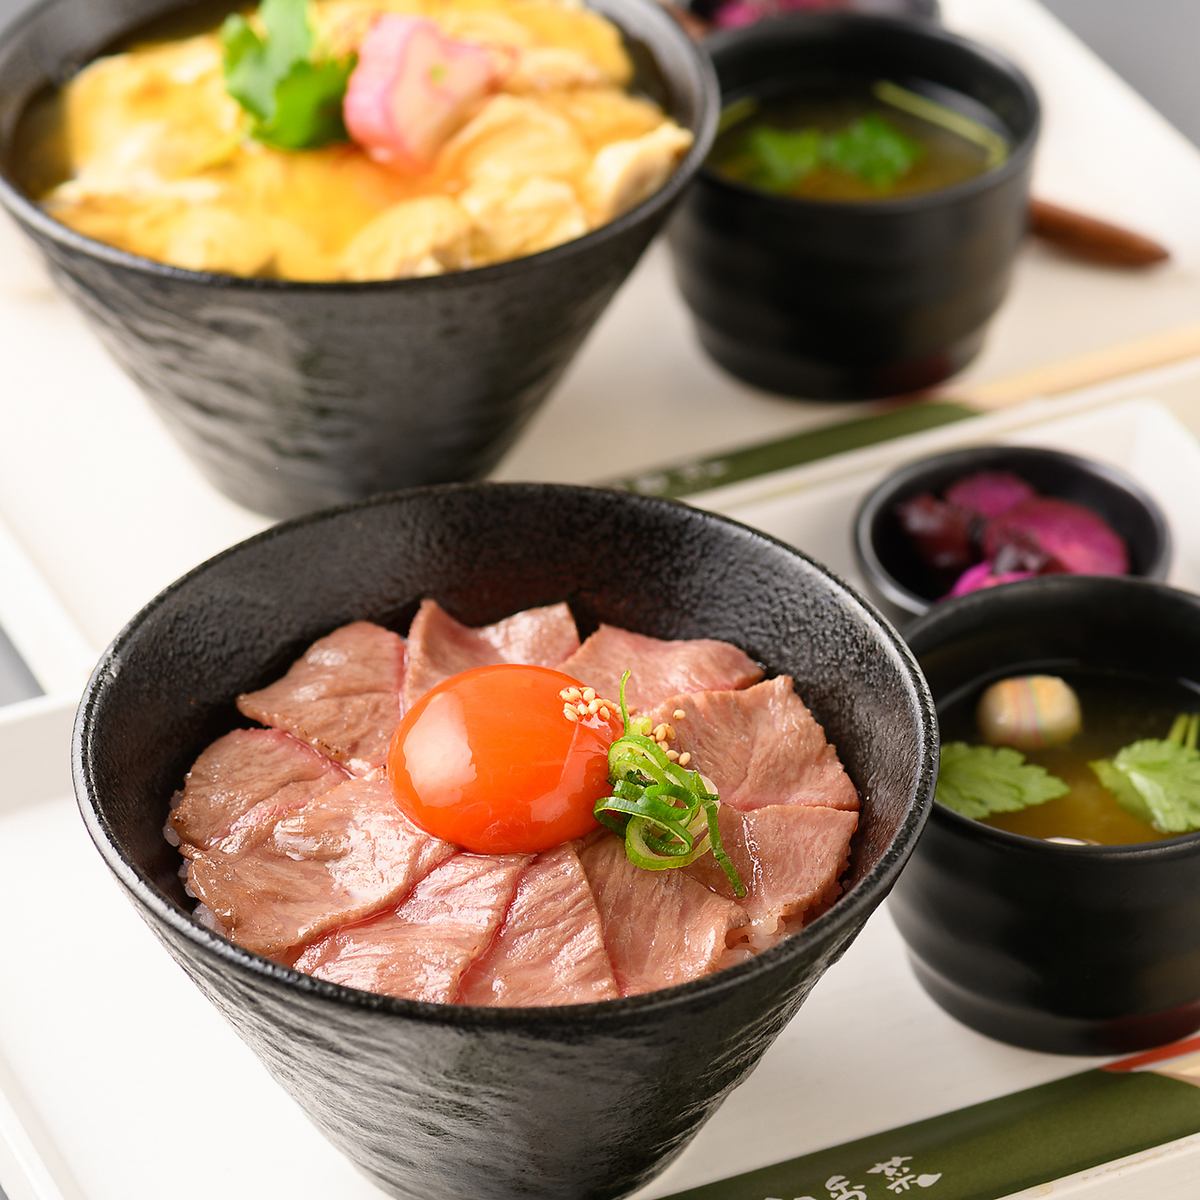 我們提供由京都著名烤肉店主廚監製的高品質肉品。